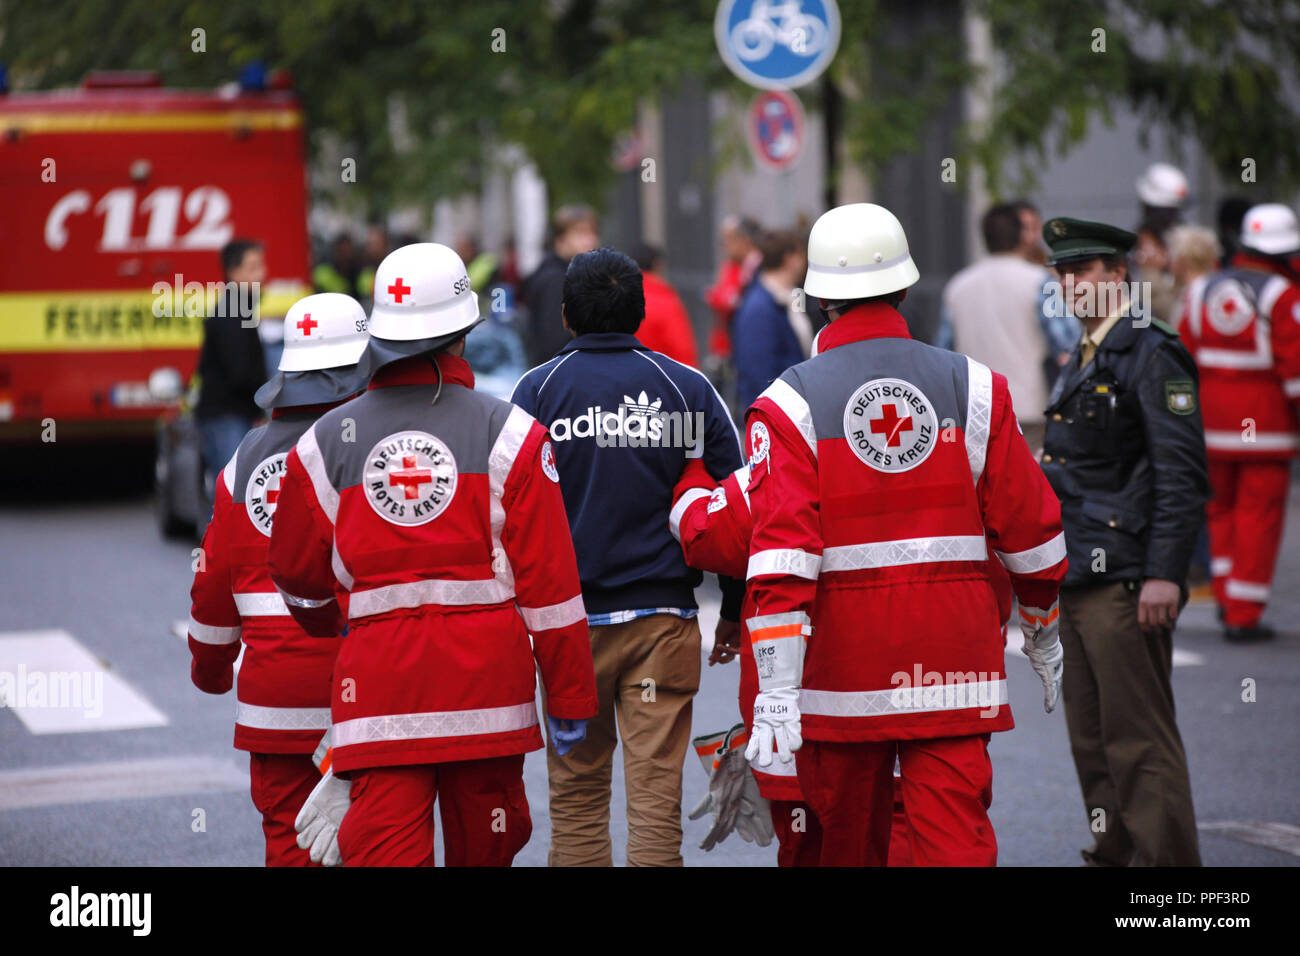 Techniciens médicaux d'aider la police lors de l'évacuation du camp de demandeurs d'asile en grève de la faim. Les réfugiés ont fait une grève de la faim il y a 8 jours au Rindermarkt à Munich pour démontrer pour de meilleures conditions de vie et de traitement. Banque D'Images